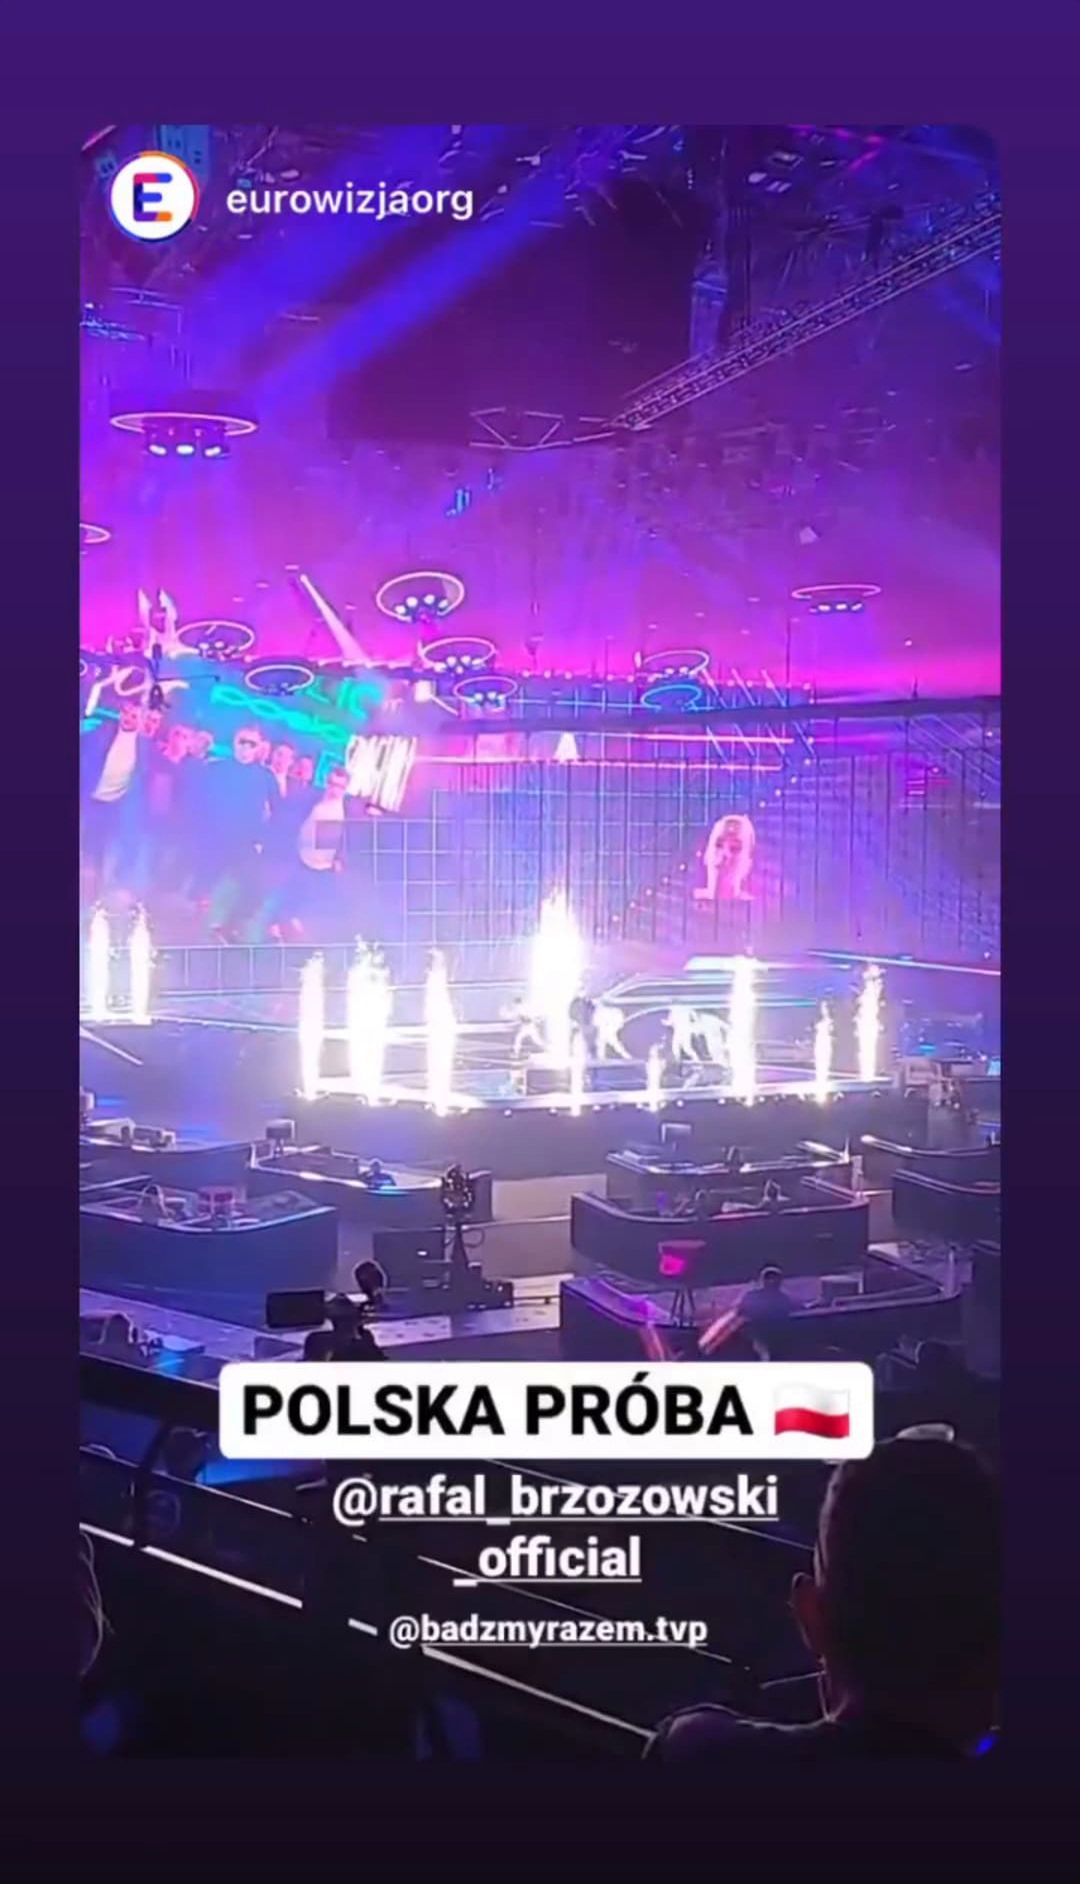 Rafał Brzozowski podczas próby, fot. Instagram Rafał Brzozowski, Eurowizja.org